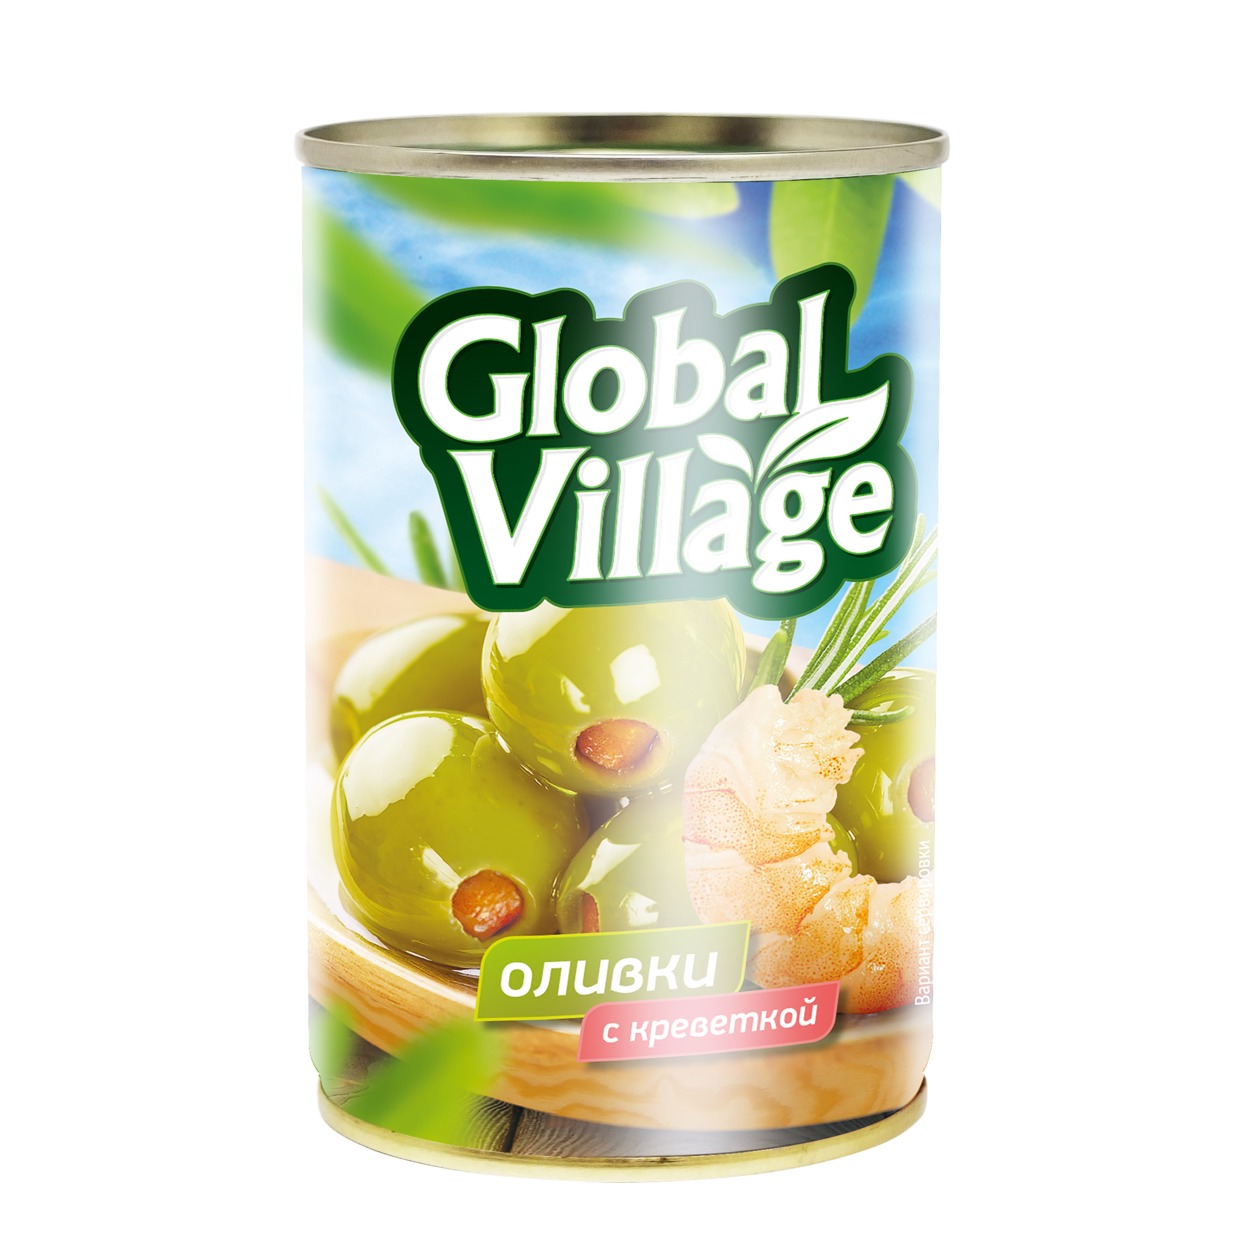 Оливки Global Village с лимоном 300 г по акции в Пятерочке